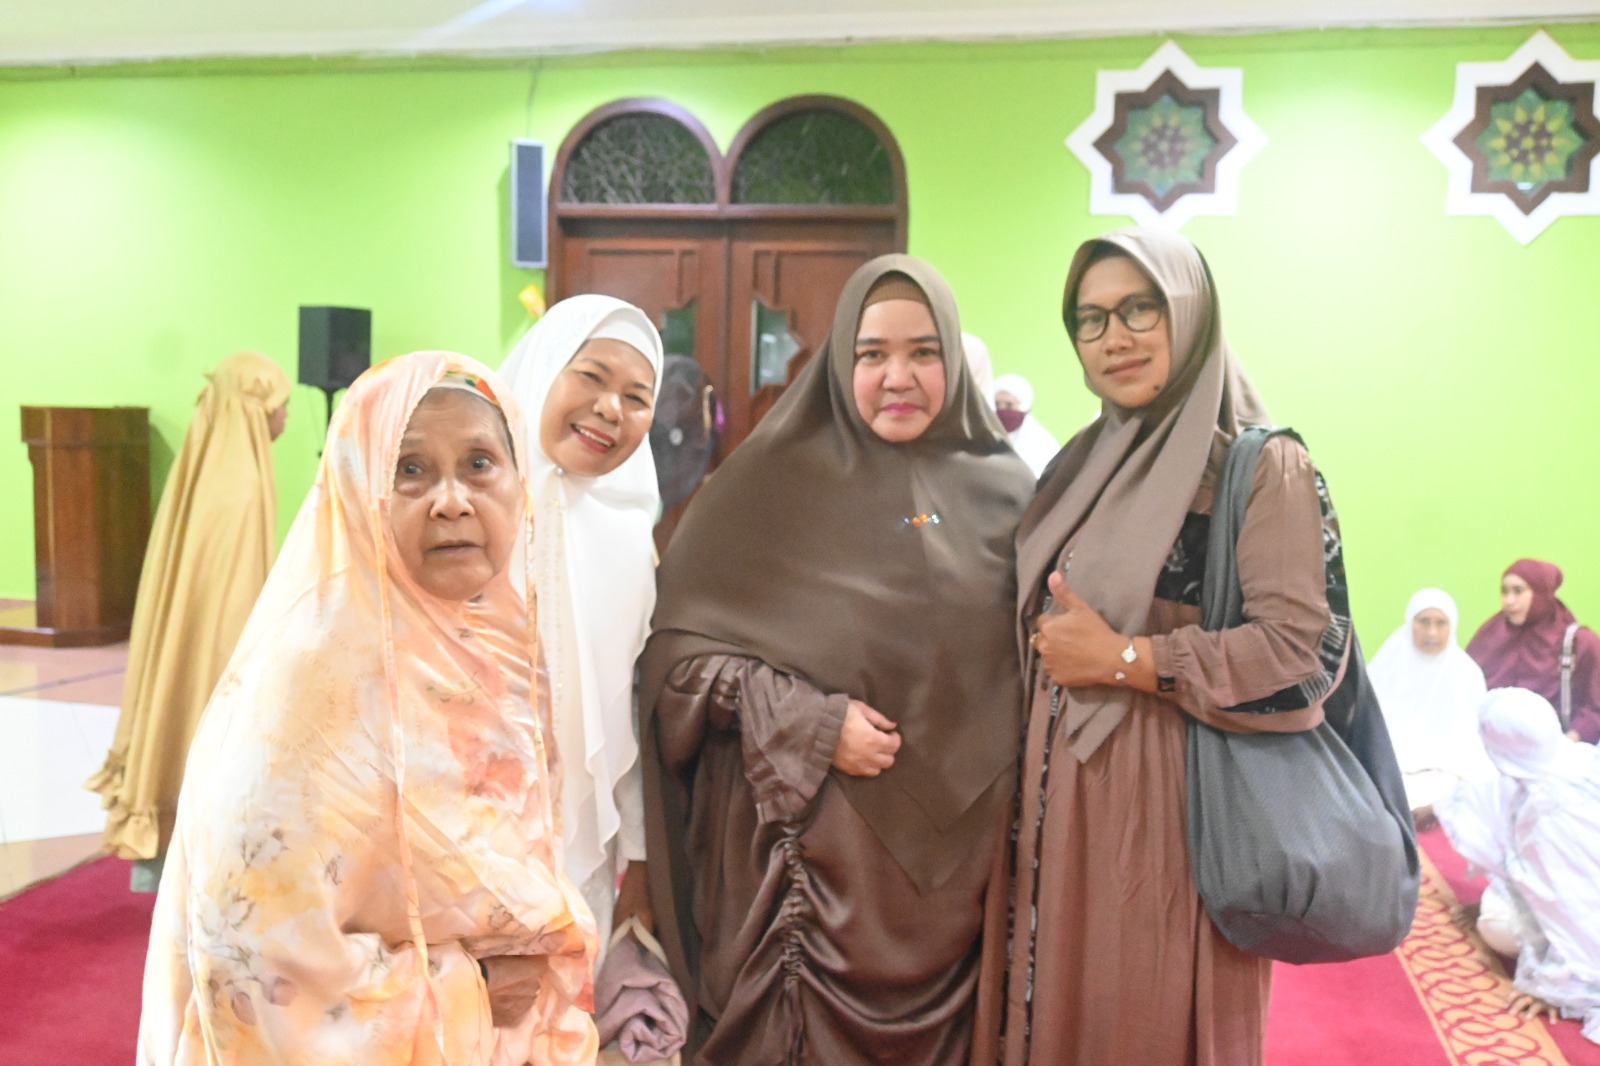 Wabup Masitah Sholat Idul Adha di Mesjid Nurul Falah, Warga Ajak Berfoto